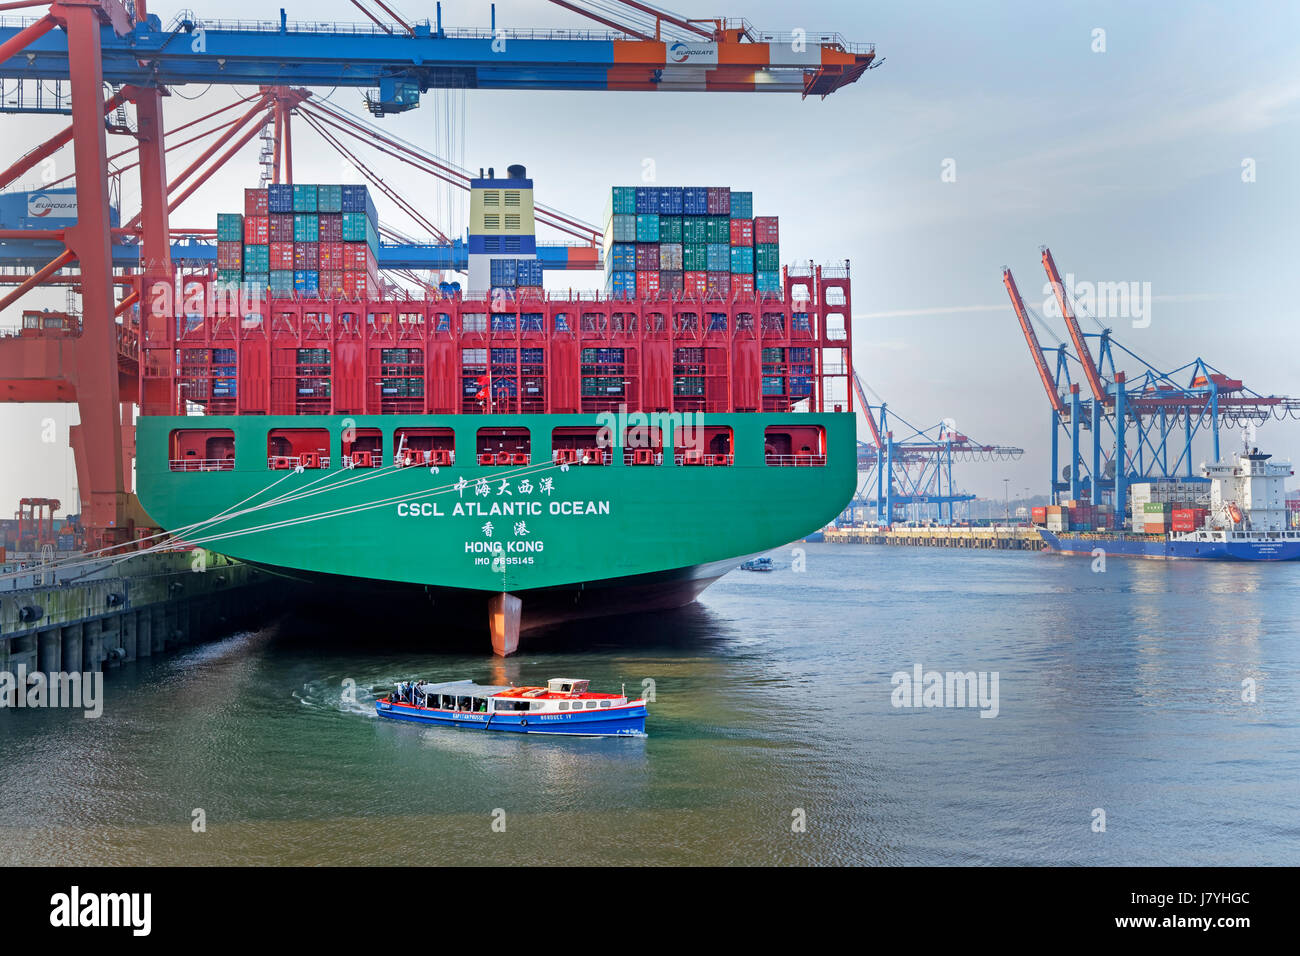 Ein Containerschiff liegt im Hamburger Hafen, Containerterminal Eurogate di Amburgo, Deutschland / nave container dal porto di Amburgo, container terminal Eur Foto Stock